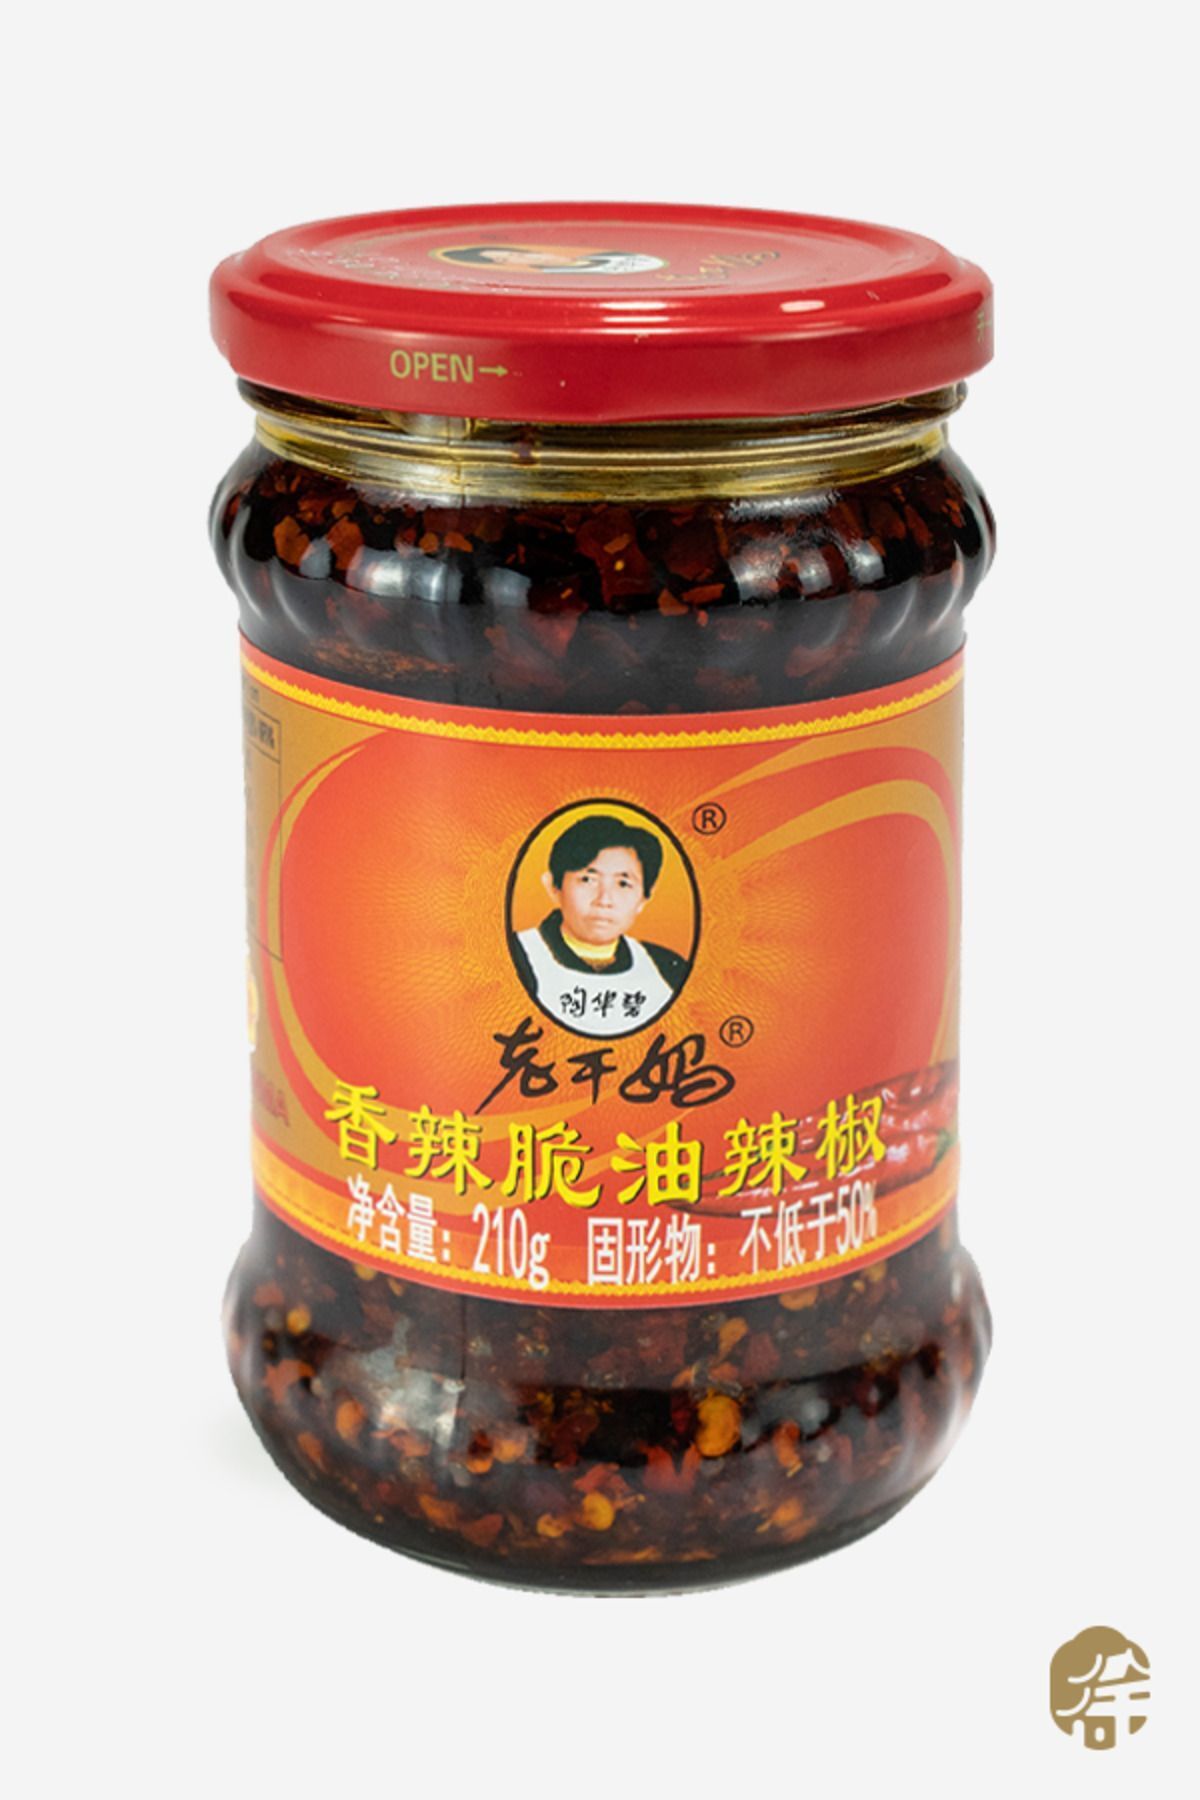 LAO GAN MA Çıtır Çıtır Soya Fasulyeli Biber Sosu ( Chili Sauce With Crispy Soybean) - 210g